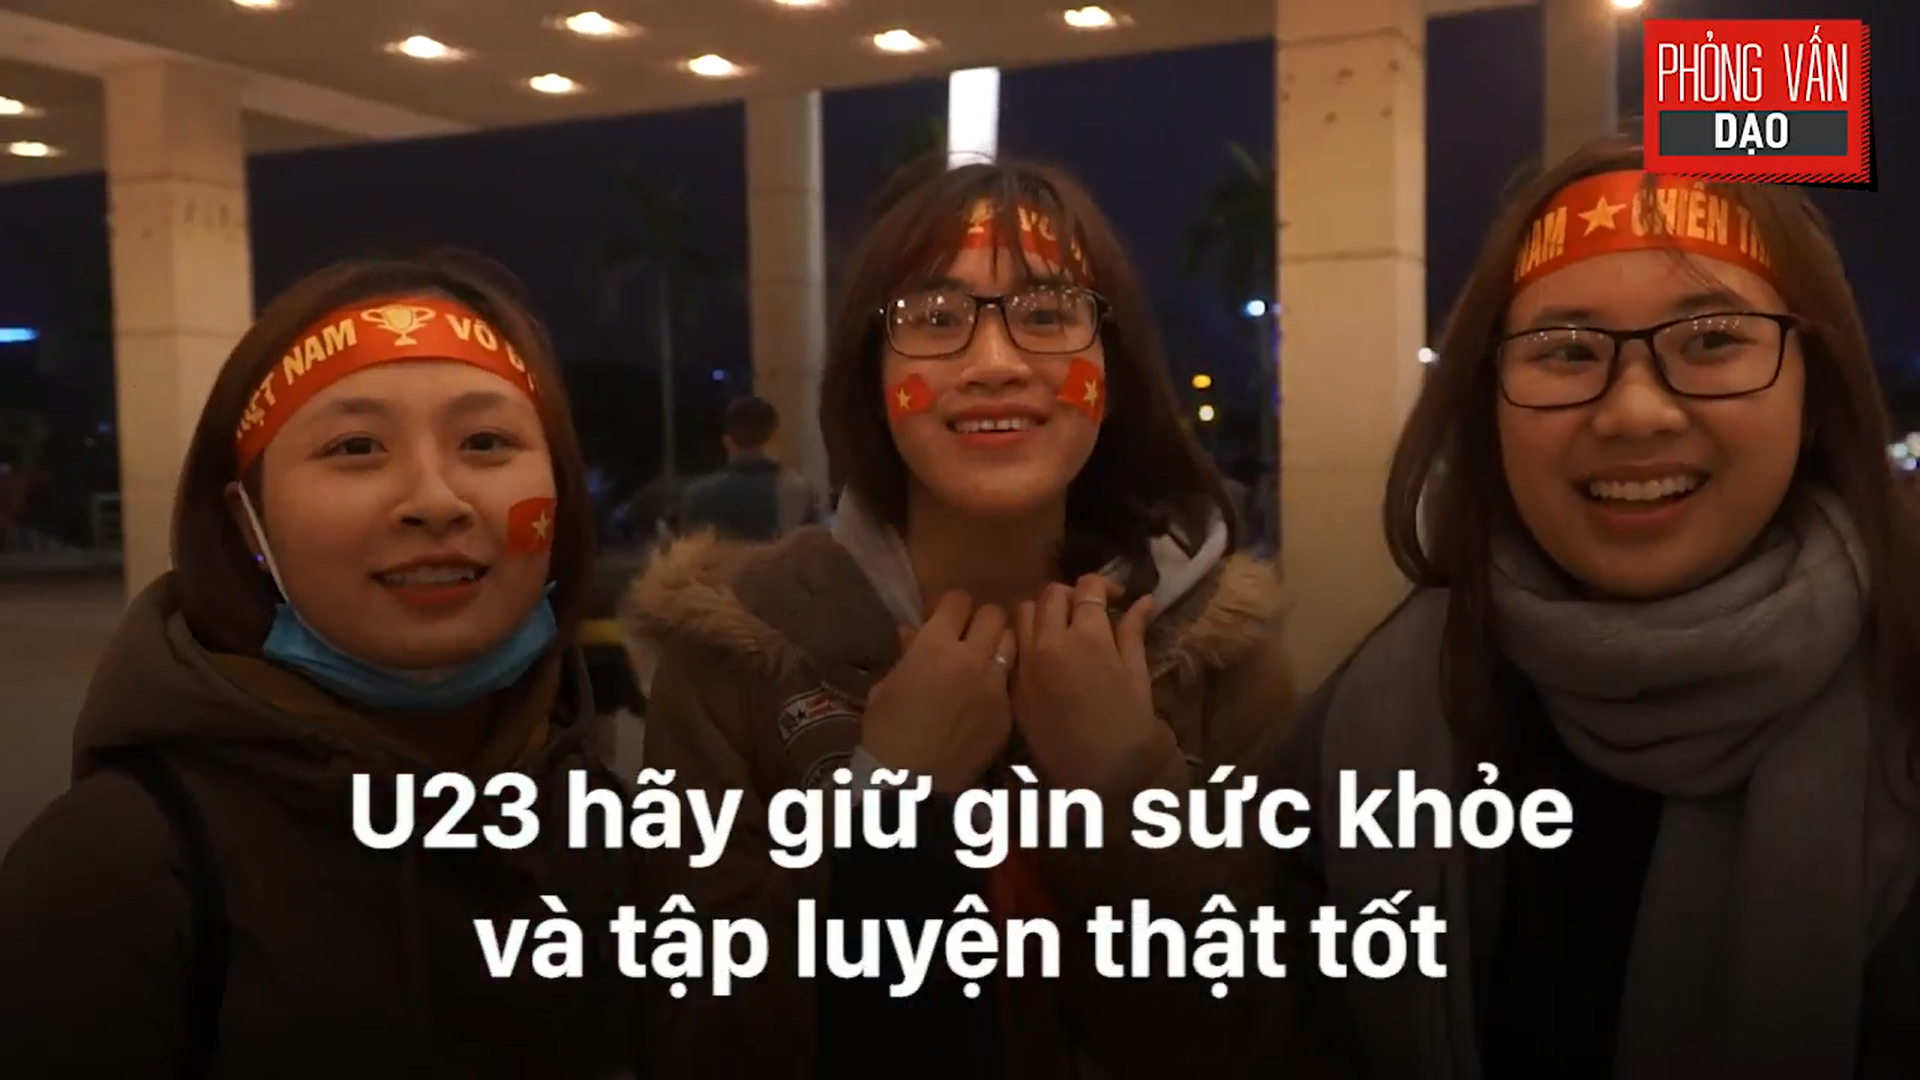 Phỏng vấn dạo: Cảm xúc của người hâm mộ khi đón U23 Việt Nam trở về trong vòng tay - Ảnh 20.